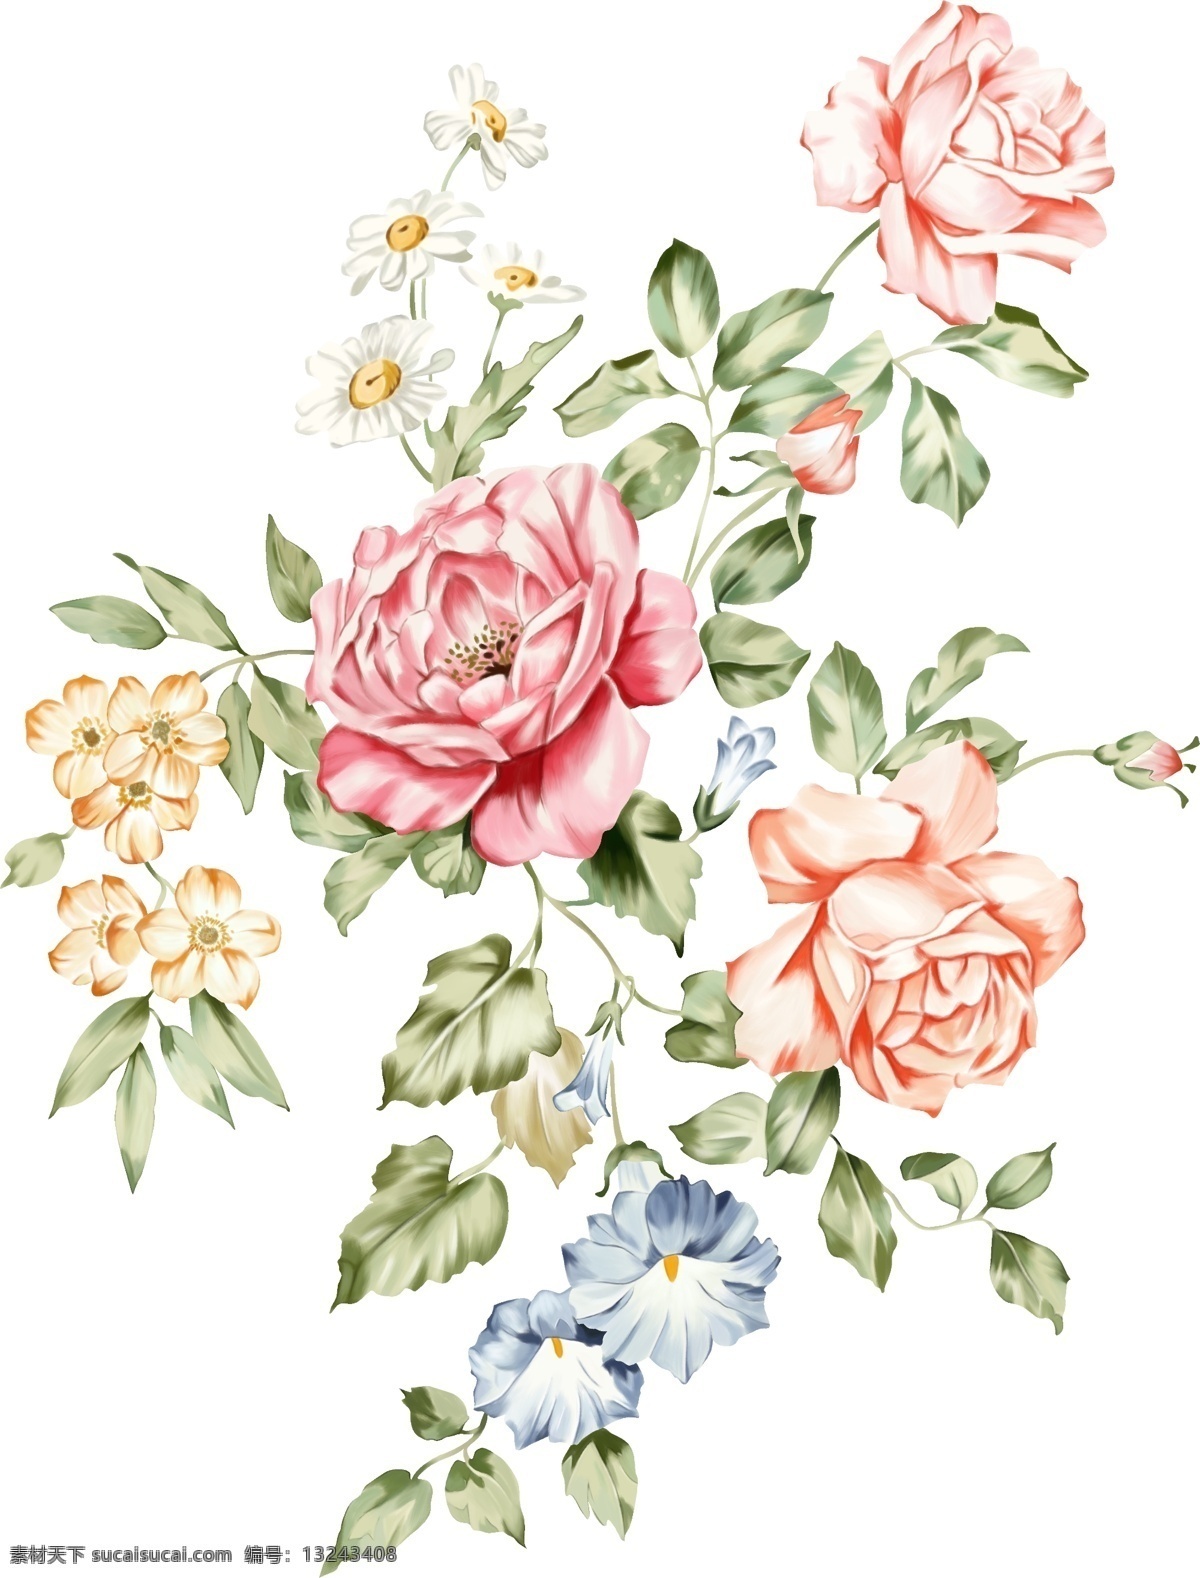 玫瑰大花图片 手绘花 花卉 数码印花 高清绘花 水彩花 玫瑰花 手绘花朵 生物世界 花草